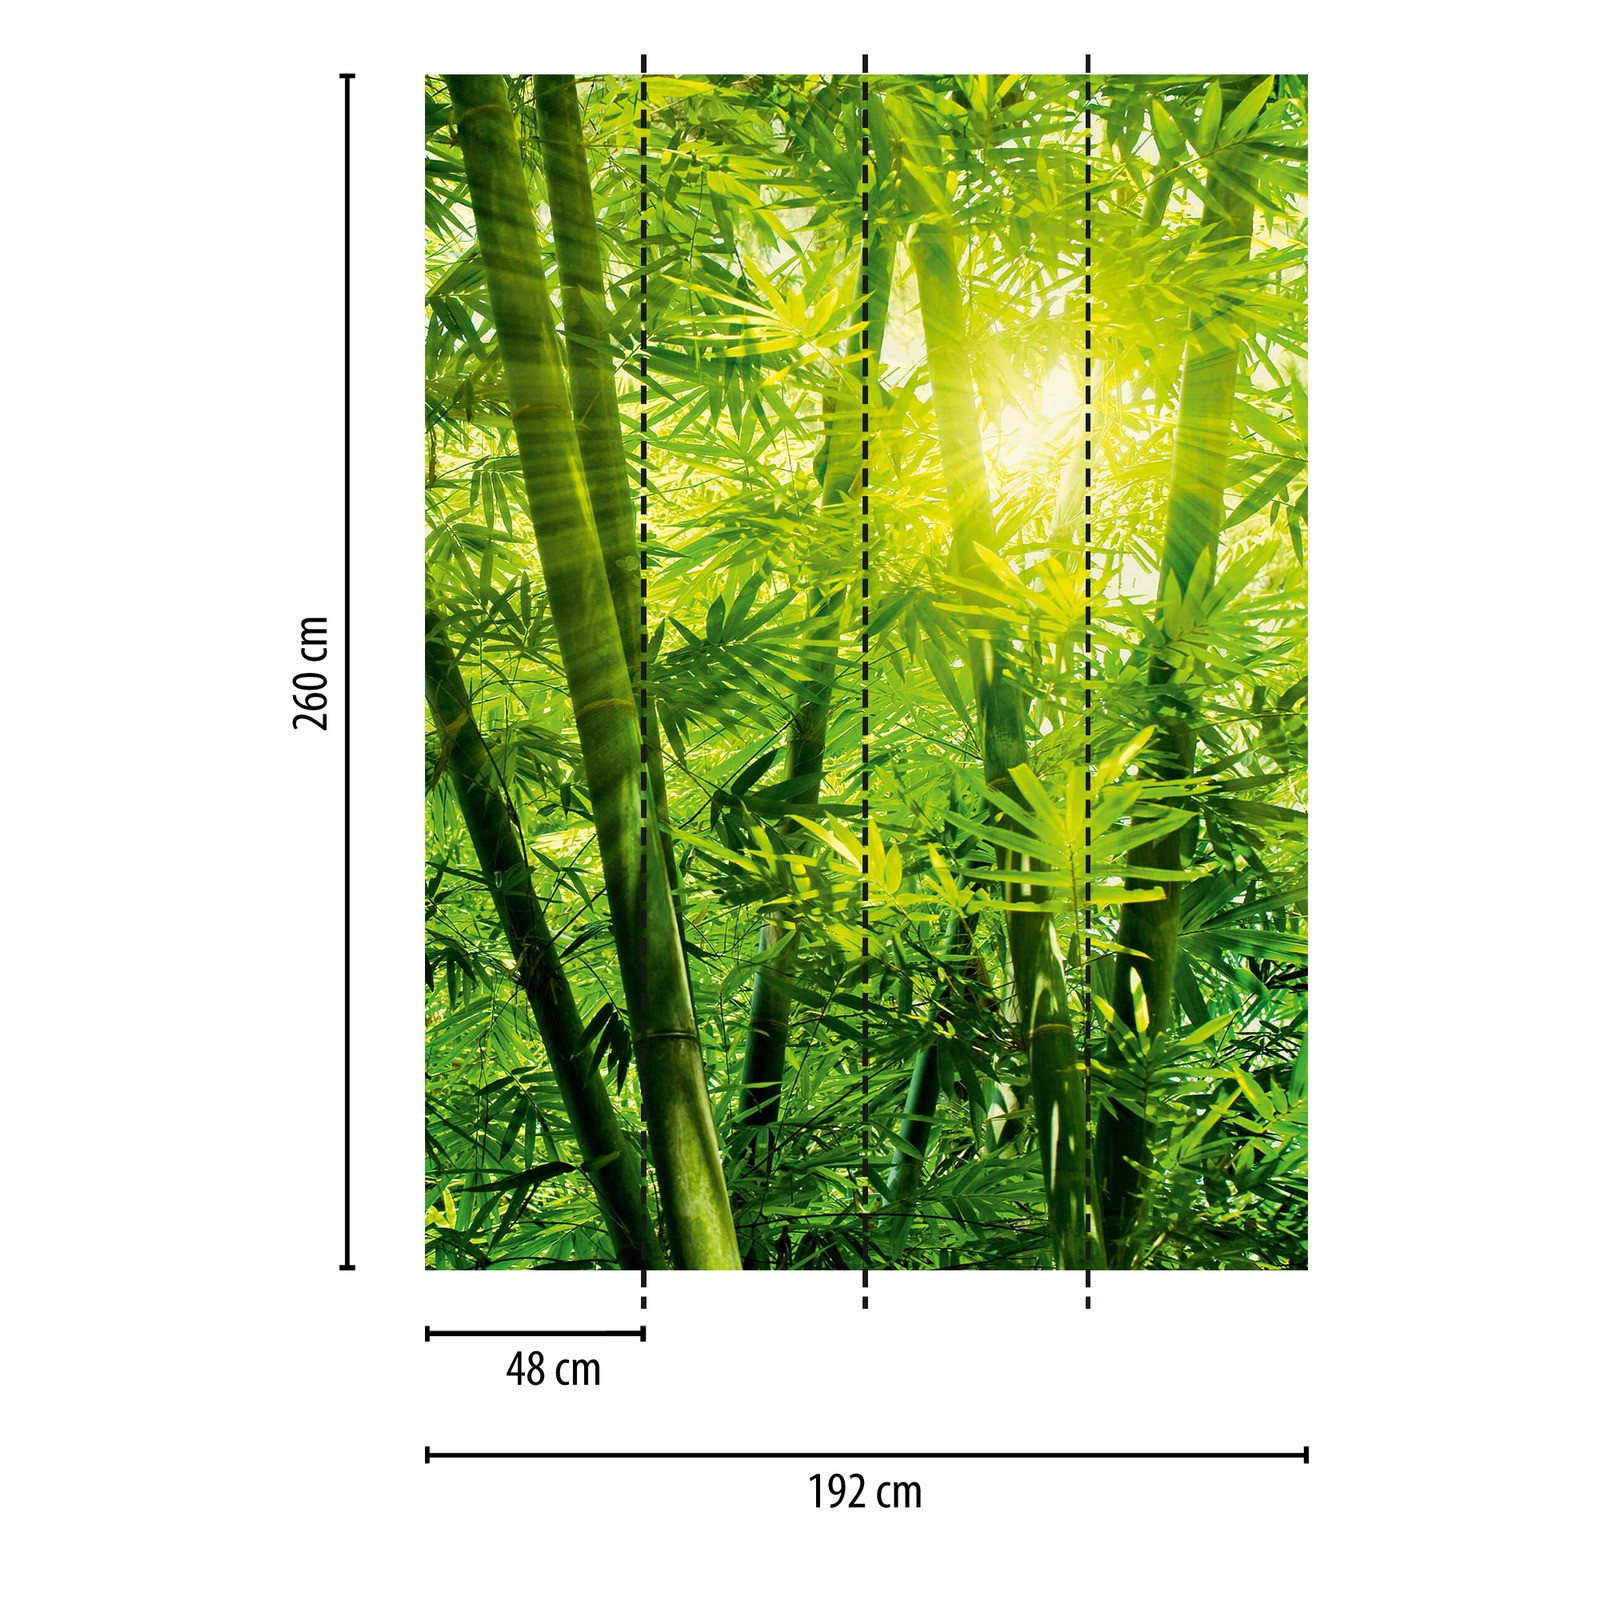             Bamboo mural jungle in the sunshine - green
        